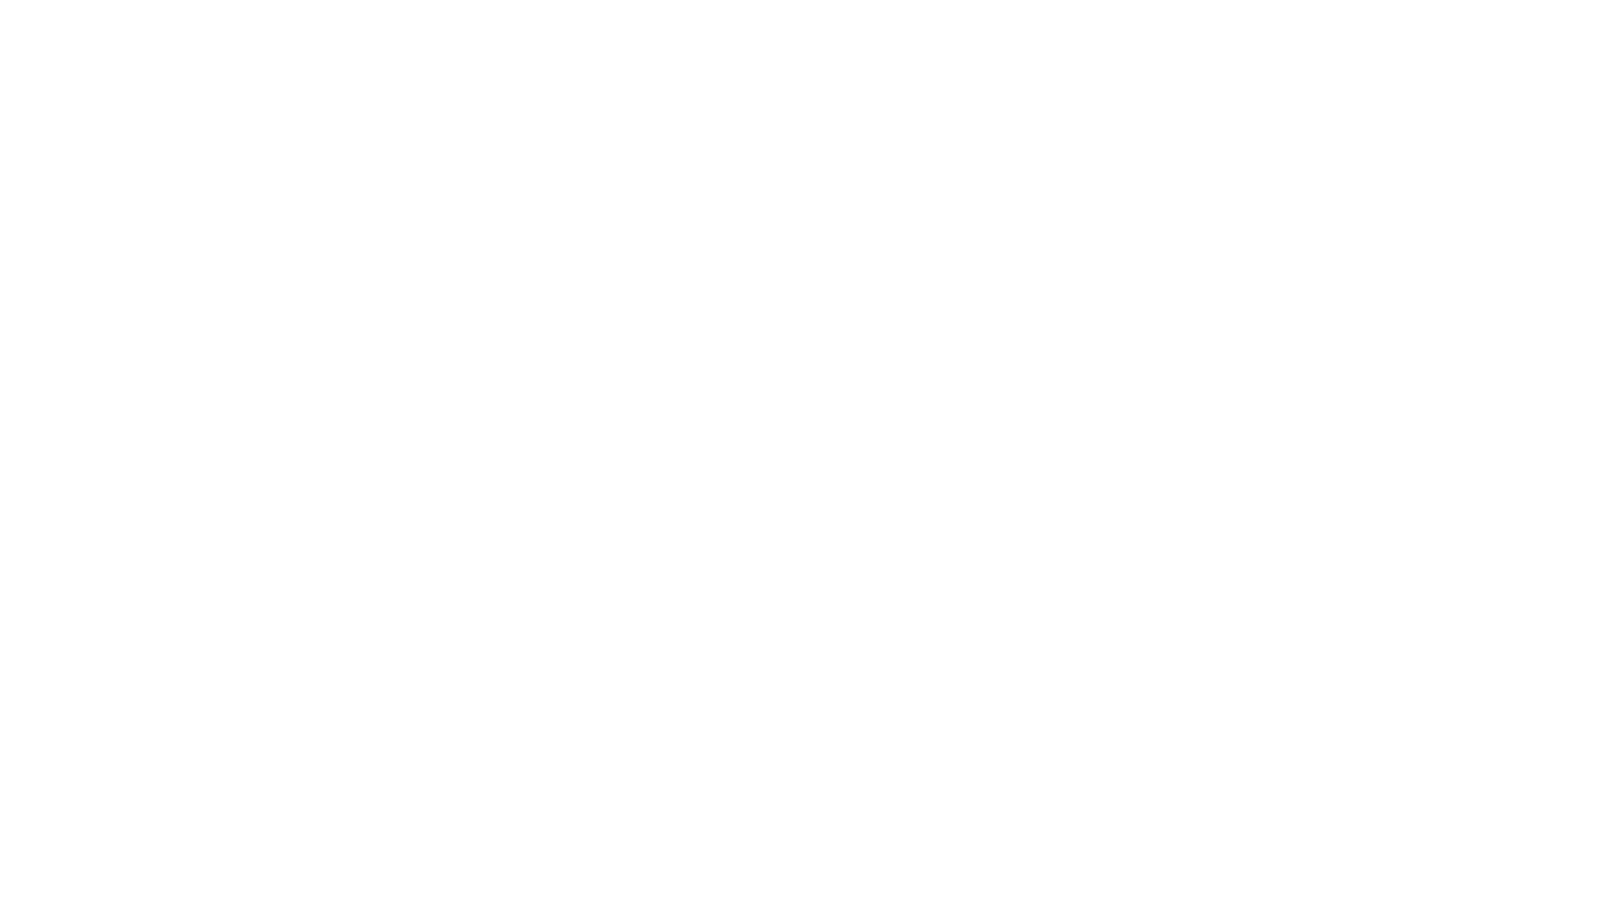 সরাসরিঃবাংলাদেশ  টেলিভিশনে বাংলাদেশের ওয়ার্কার্স পার্টির নির্বাচনী ইশতেহারের মূল বিষয়গুলো উপস্থাপন করছেন পার্টির পলিটব্যুরোর সদস‍্য কমরেড নুর আহমদ বকুল।অনুষ্ঠানটি সম্প্রচারিত হচ্ছে বাংলাদেশের ওয়ার্কার্স পার্টির সোশ্যাল মিডিয়া প্ল্যাটফর্ম ফেসবুক, ইউটিউব ও ওয়েবসাইট-এ একযোগে। সার্বিক সহযোগিতায়ঃ ICT CELL, WPB